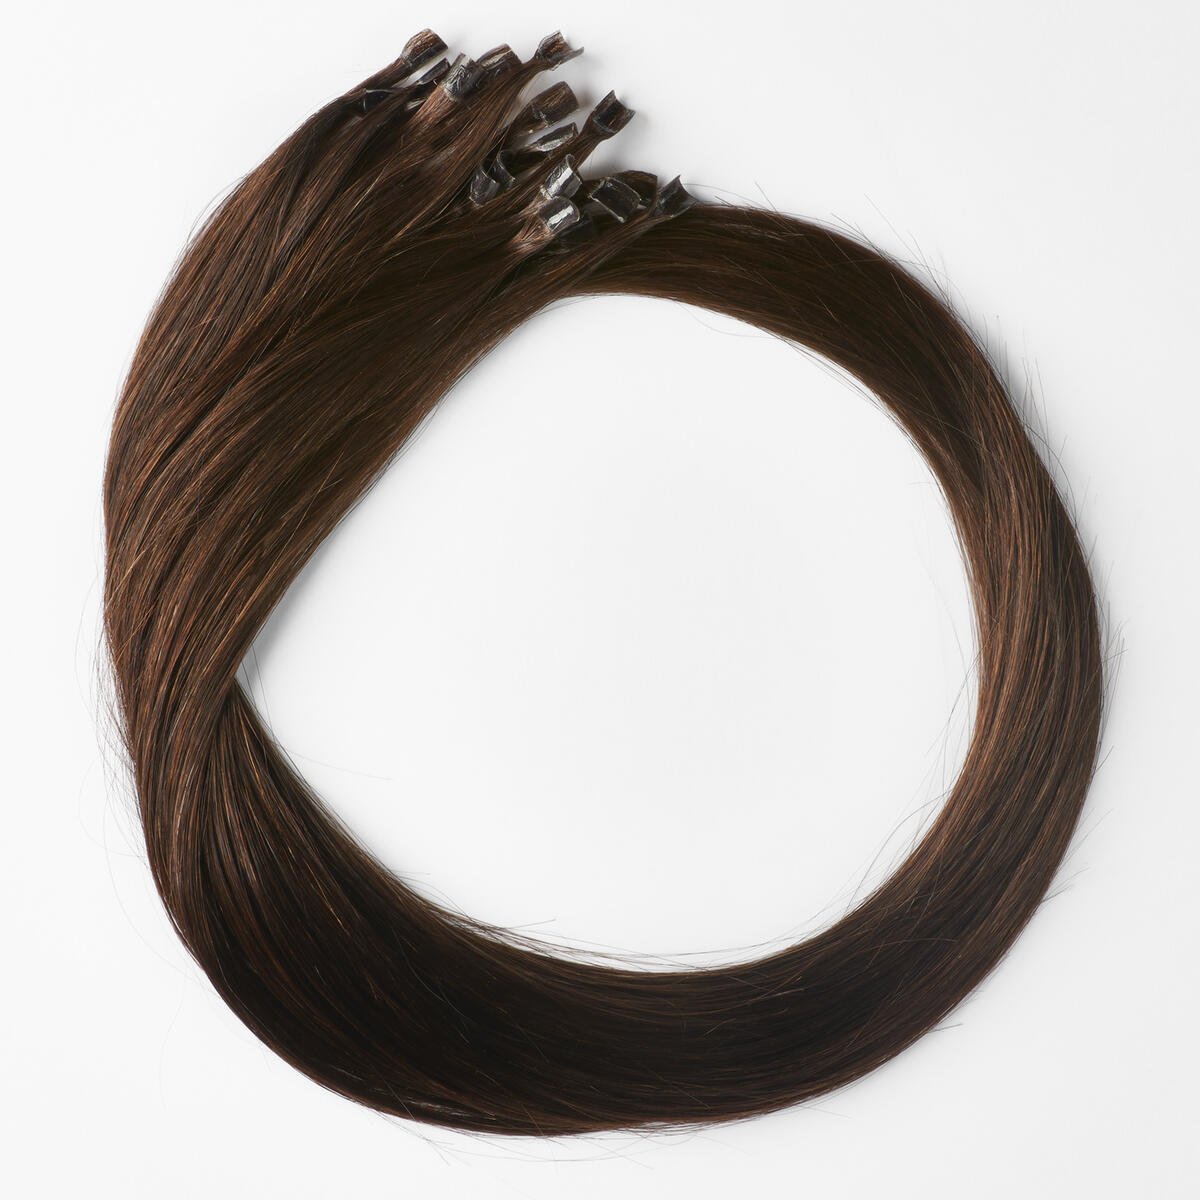 Nail Hair Premium 2.3 Chocolate Brown 50 cm